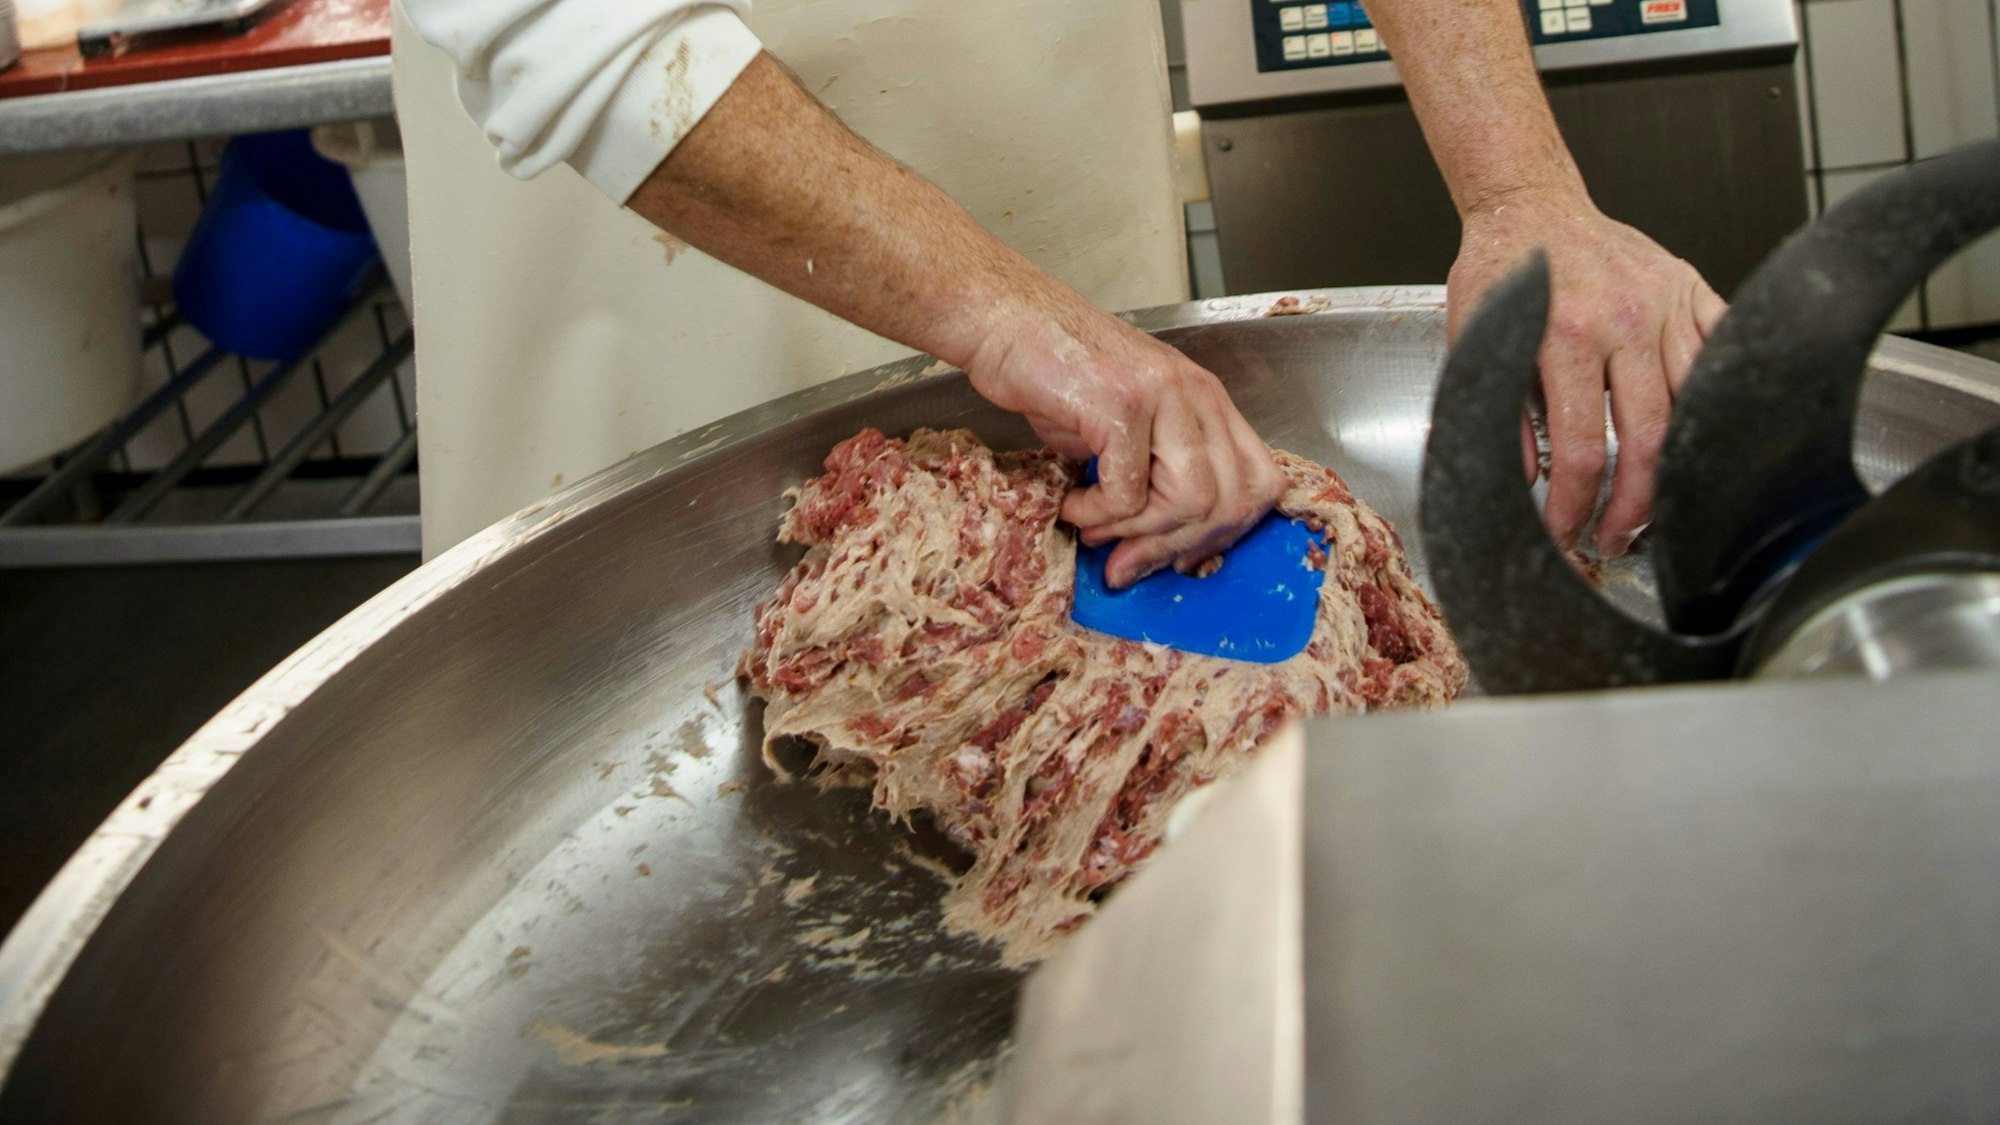 Es ist das Fleisch in einer Maschine zu sehen, dass vom Metzger bearbeitet wird.